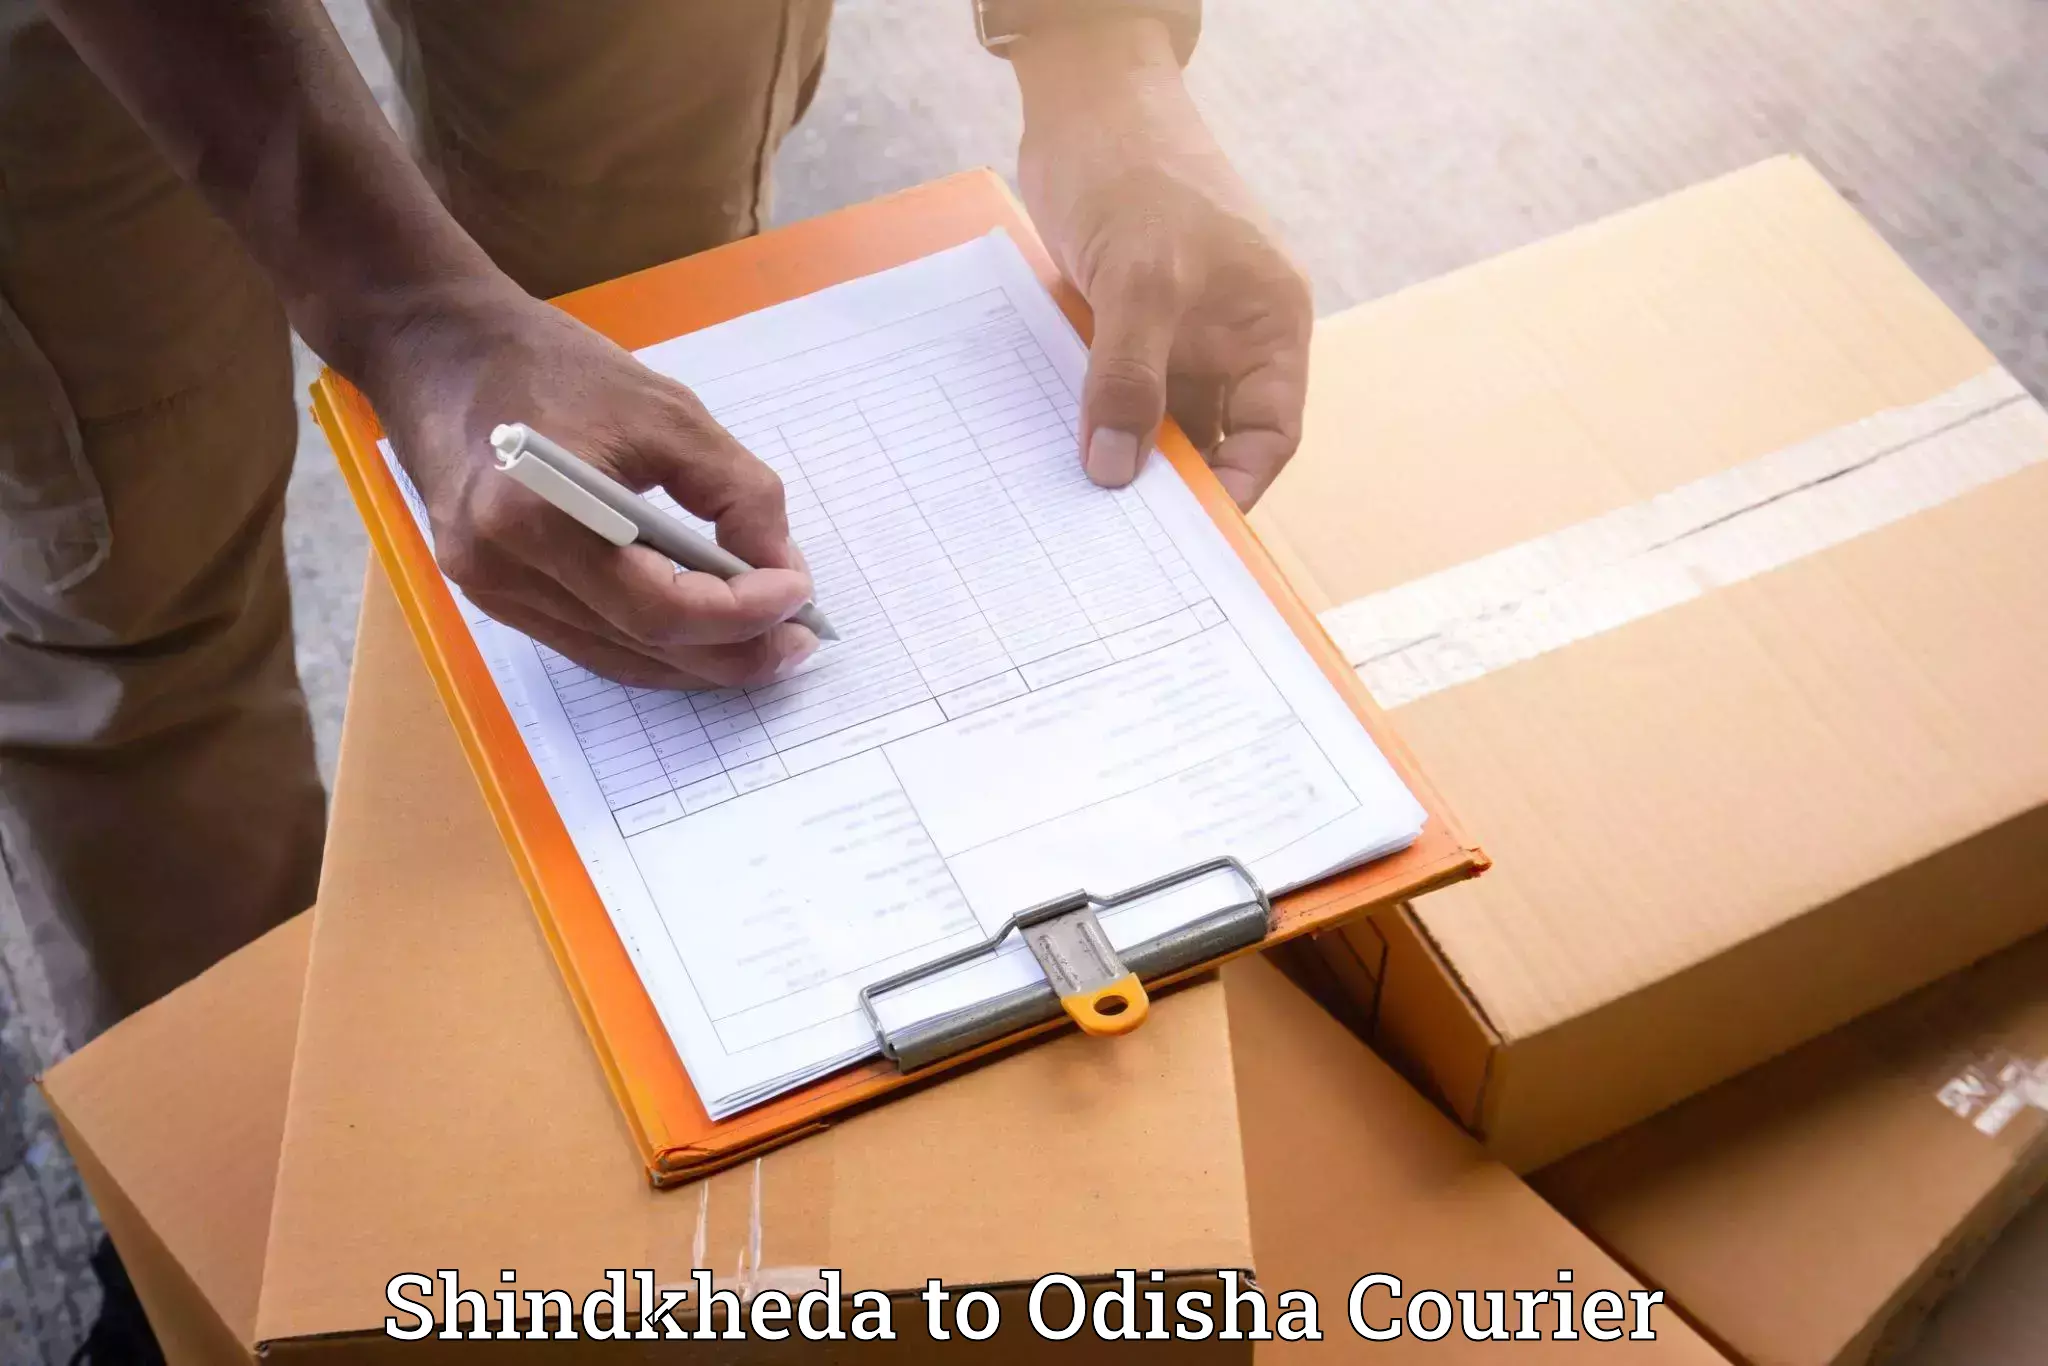 Furniture transport experts Shindkheda to Badagada